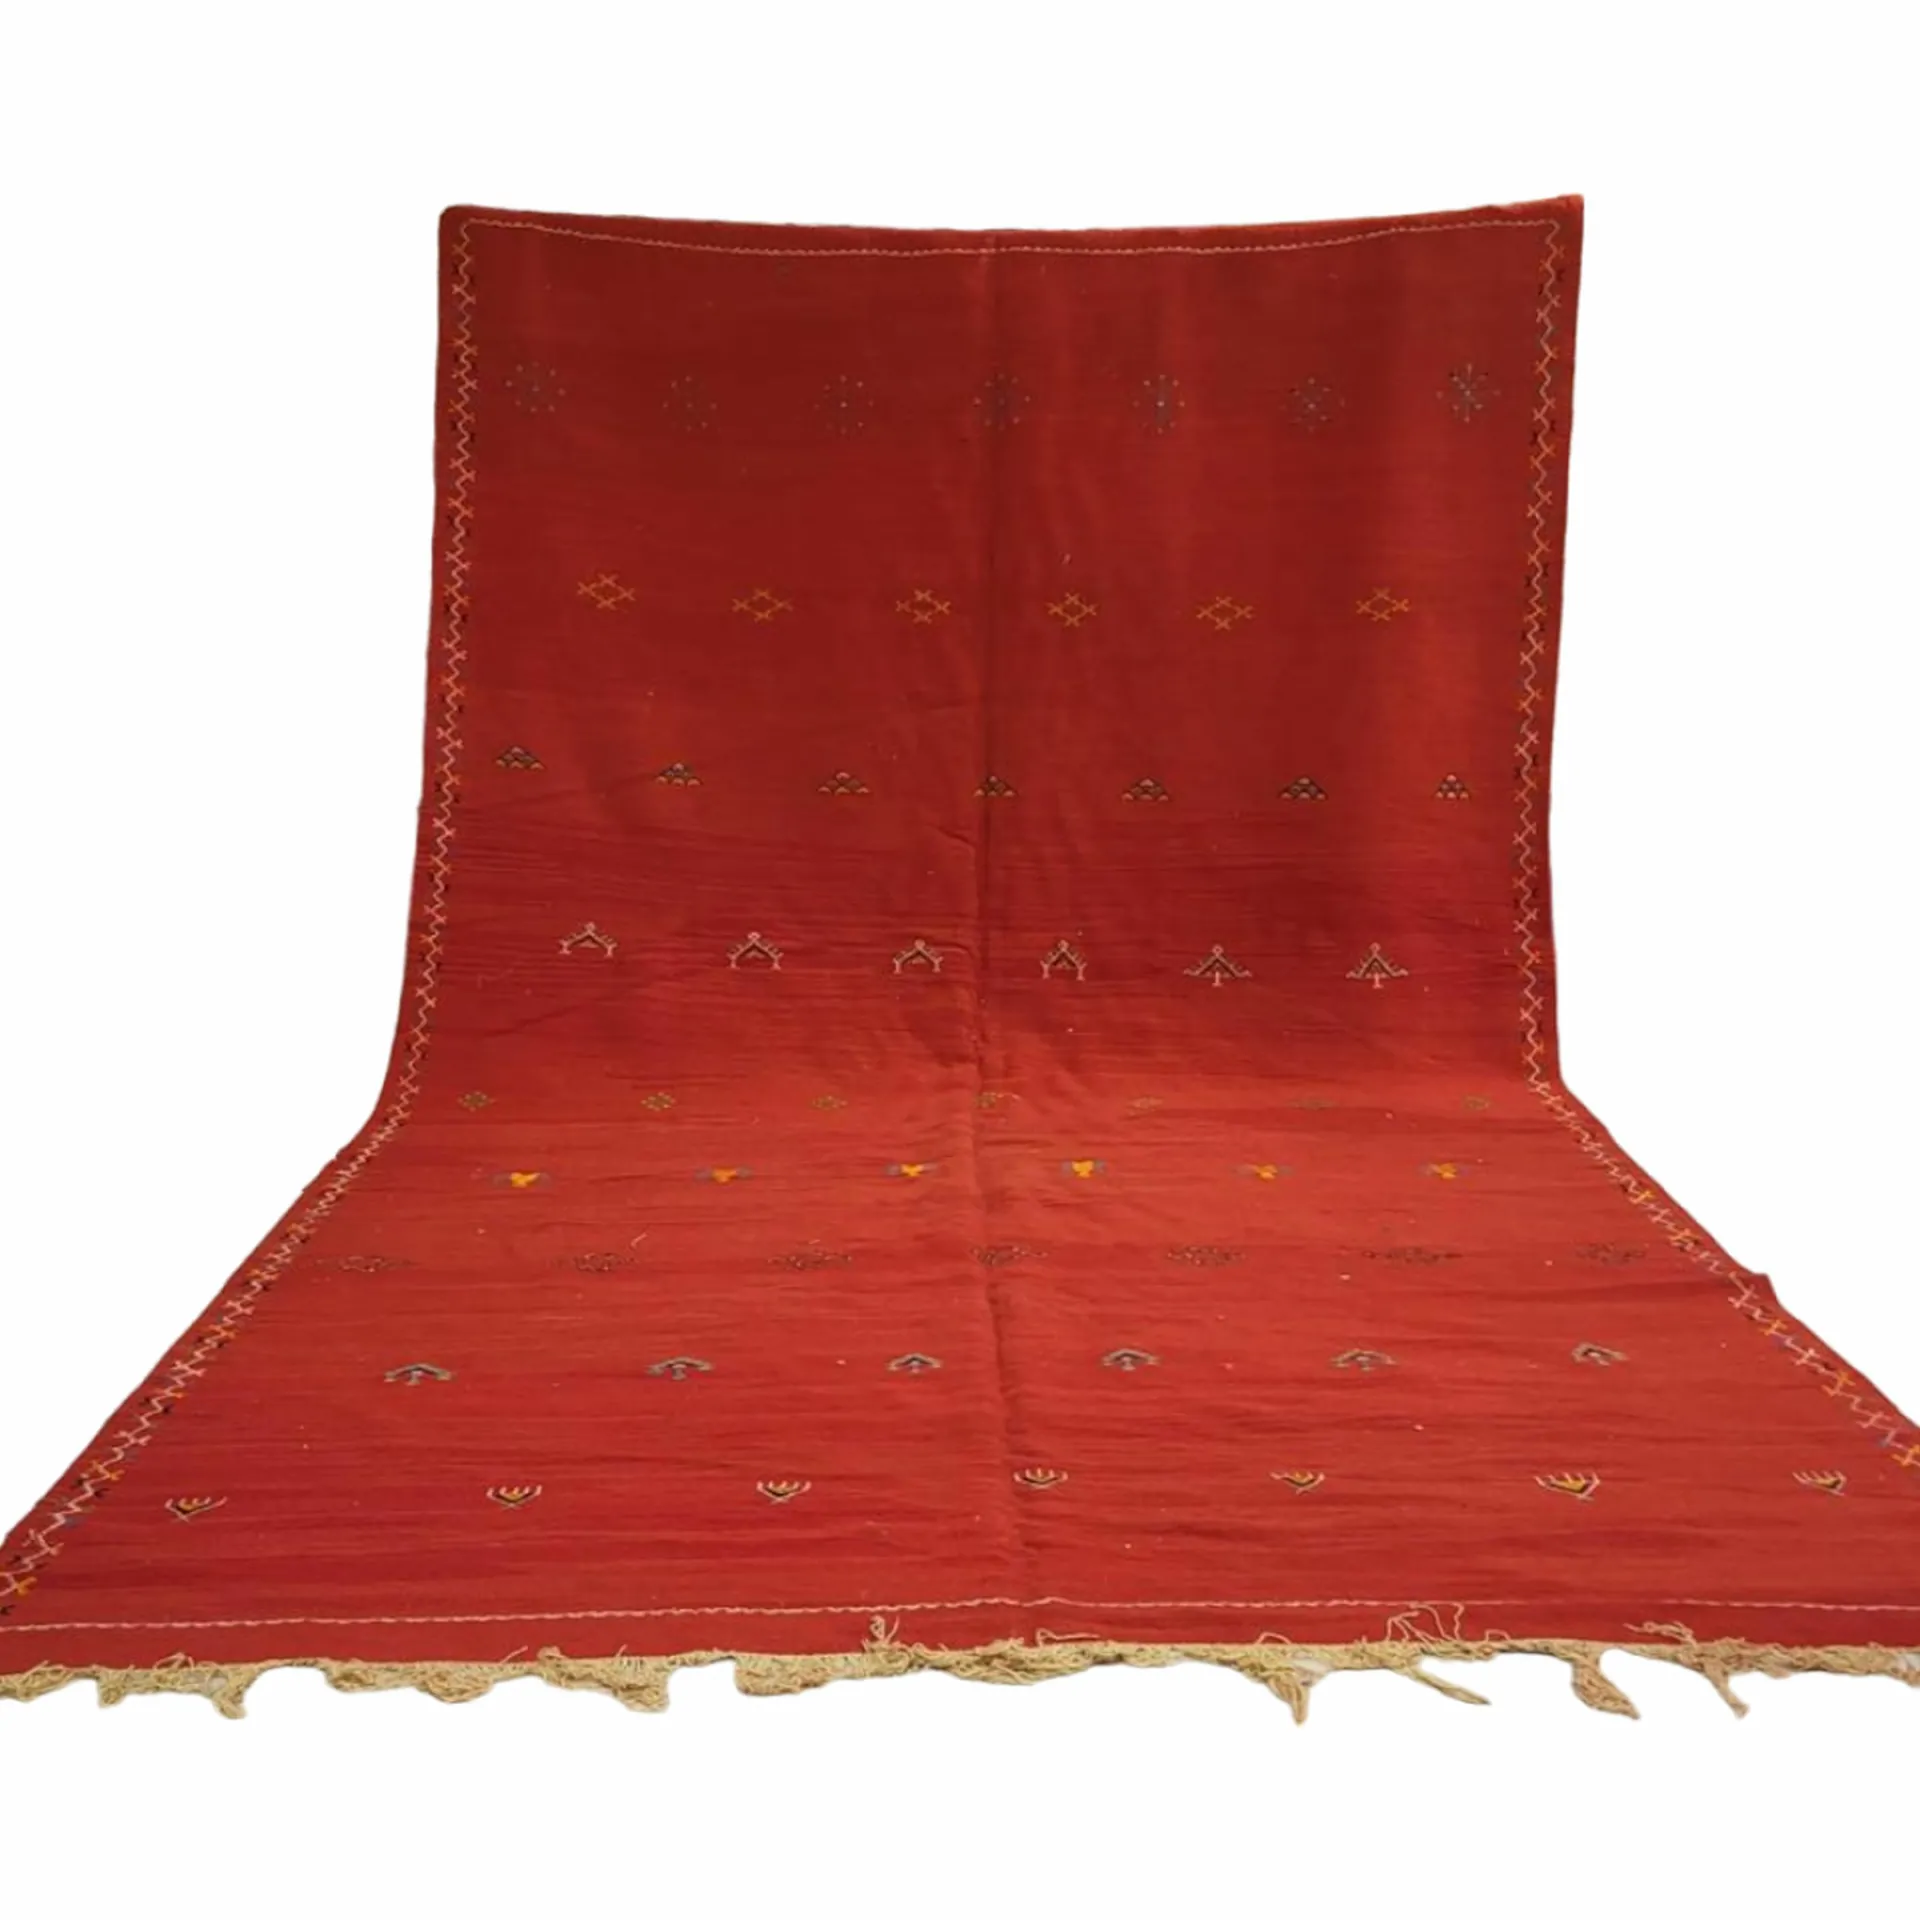 handmade flatweave wool rug red taznakht style